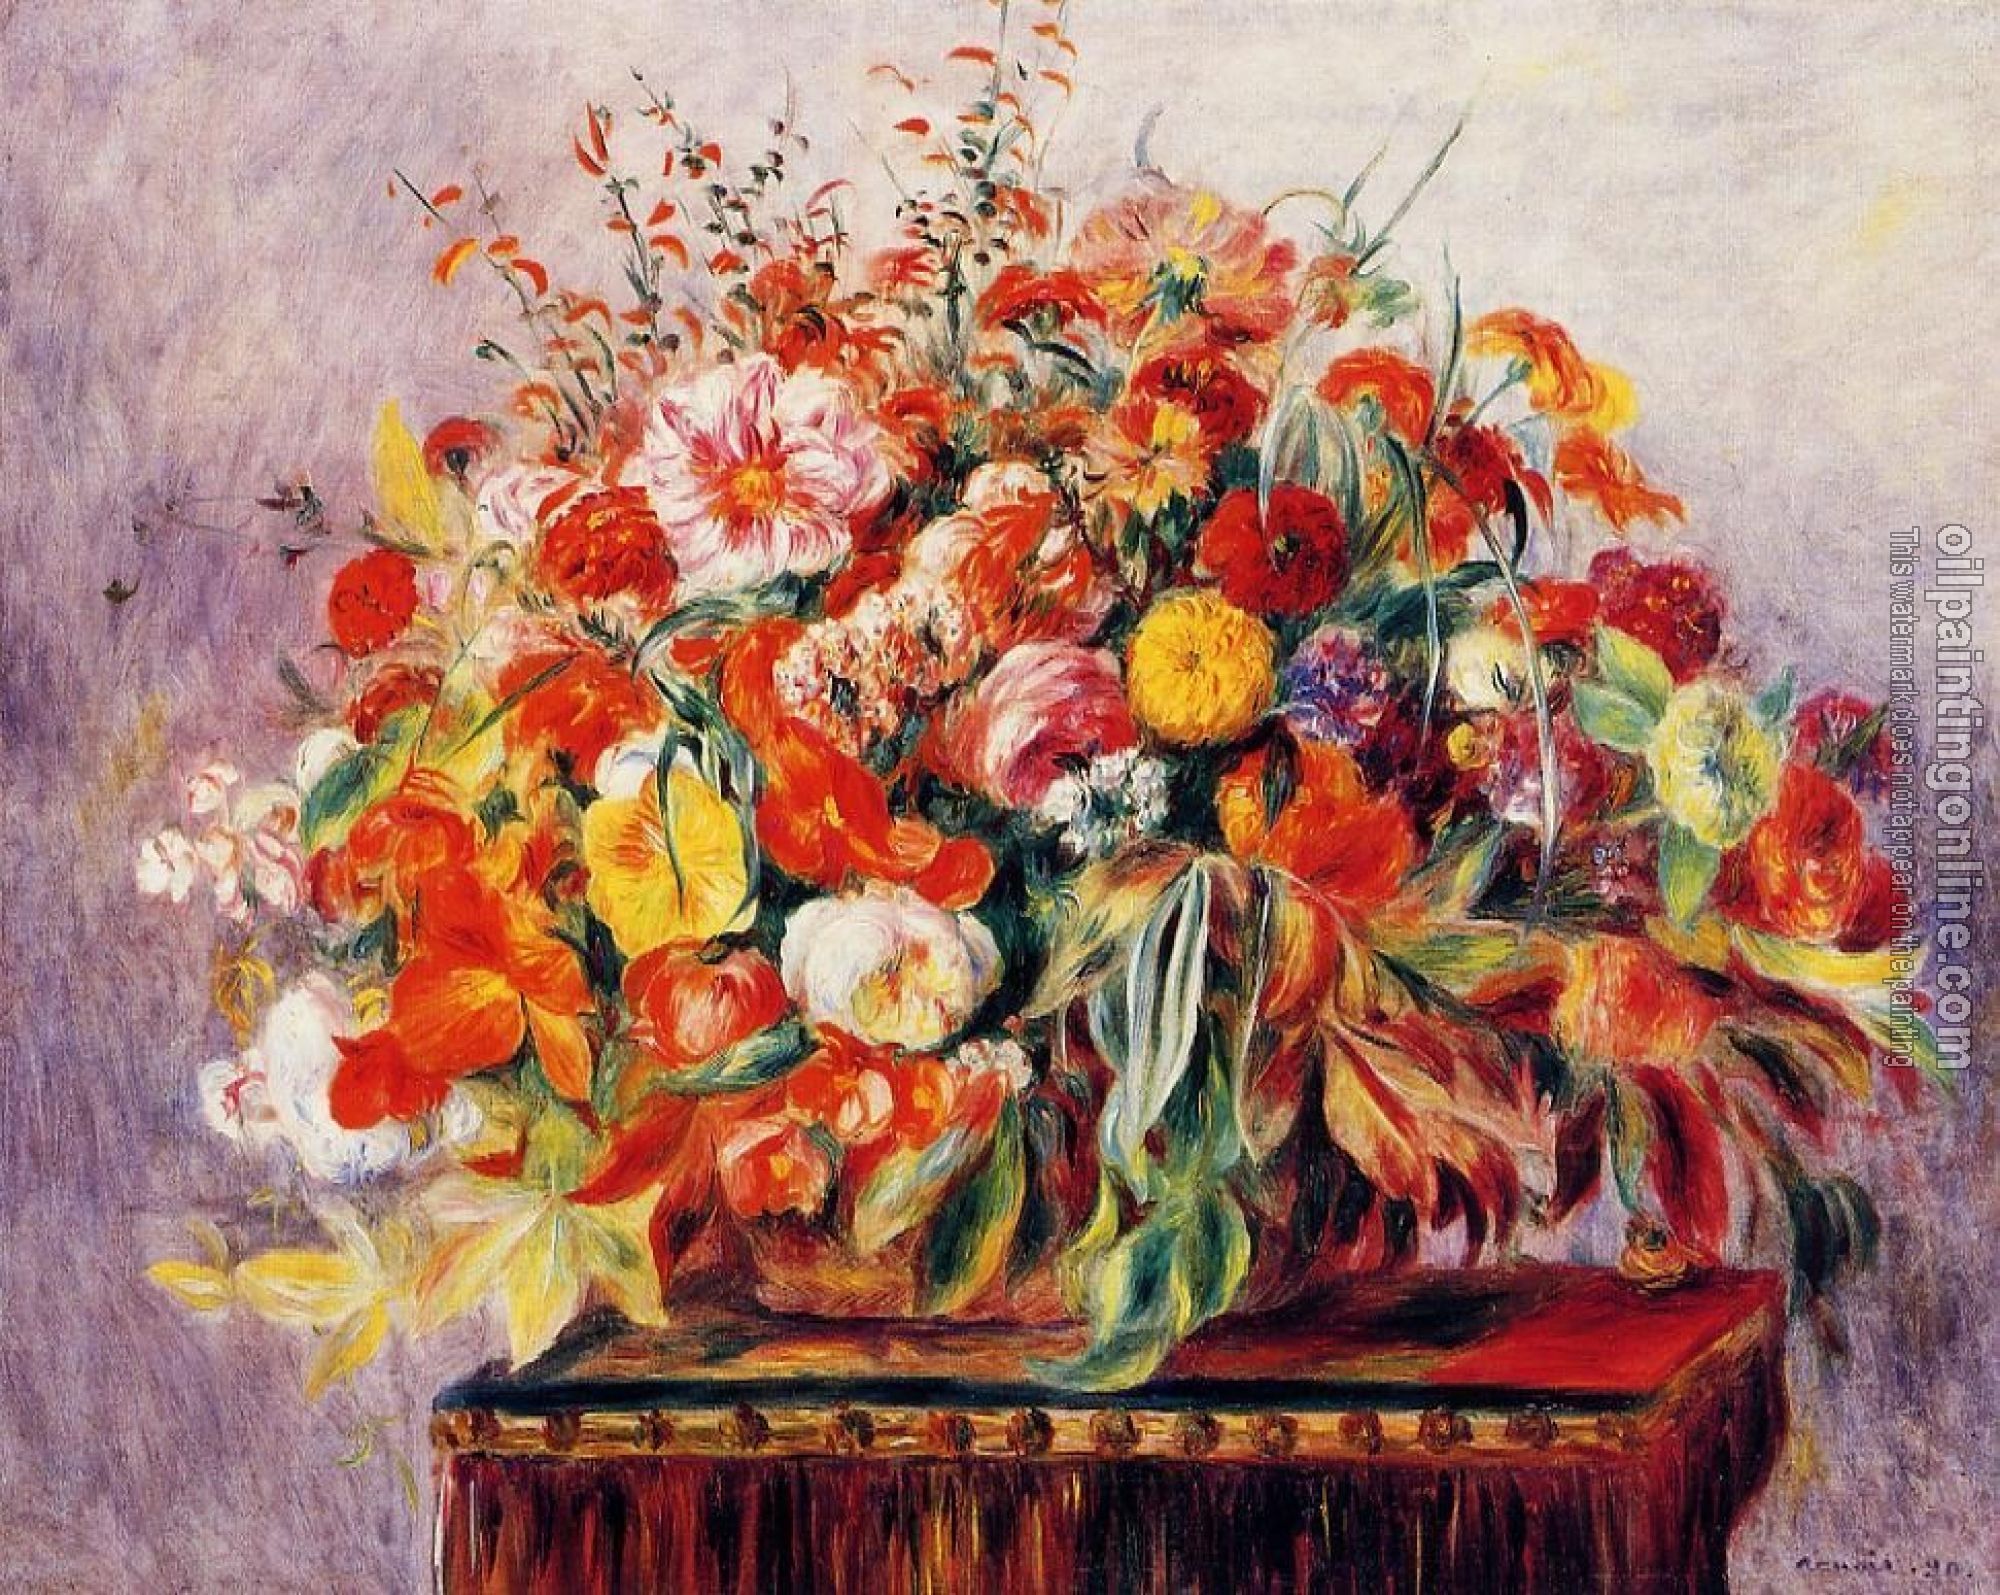 Renoir, Pierre Auguste - Basket of Flowers